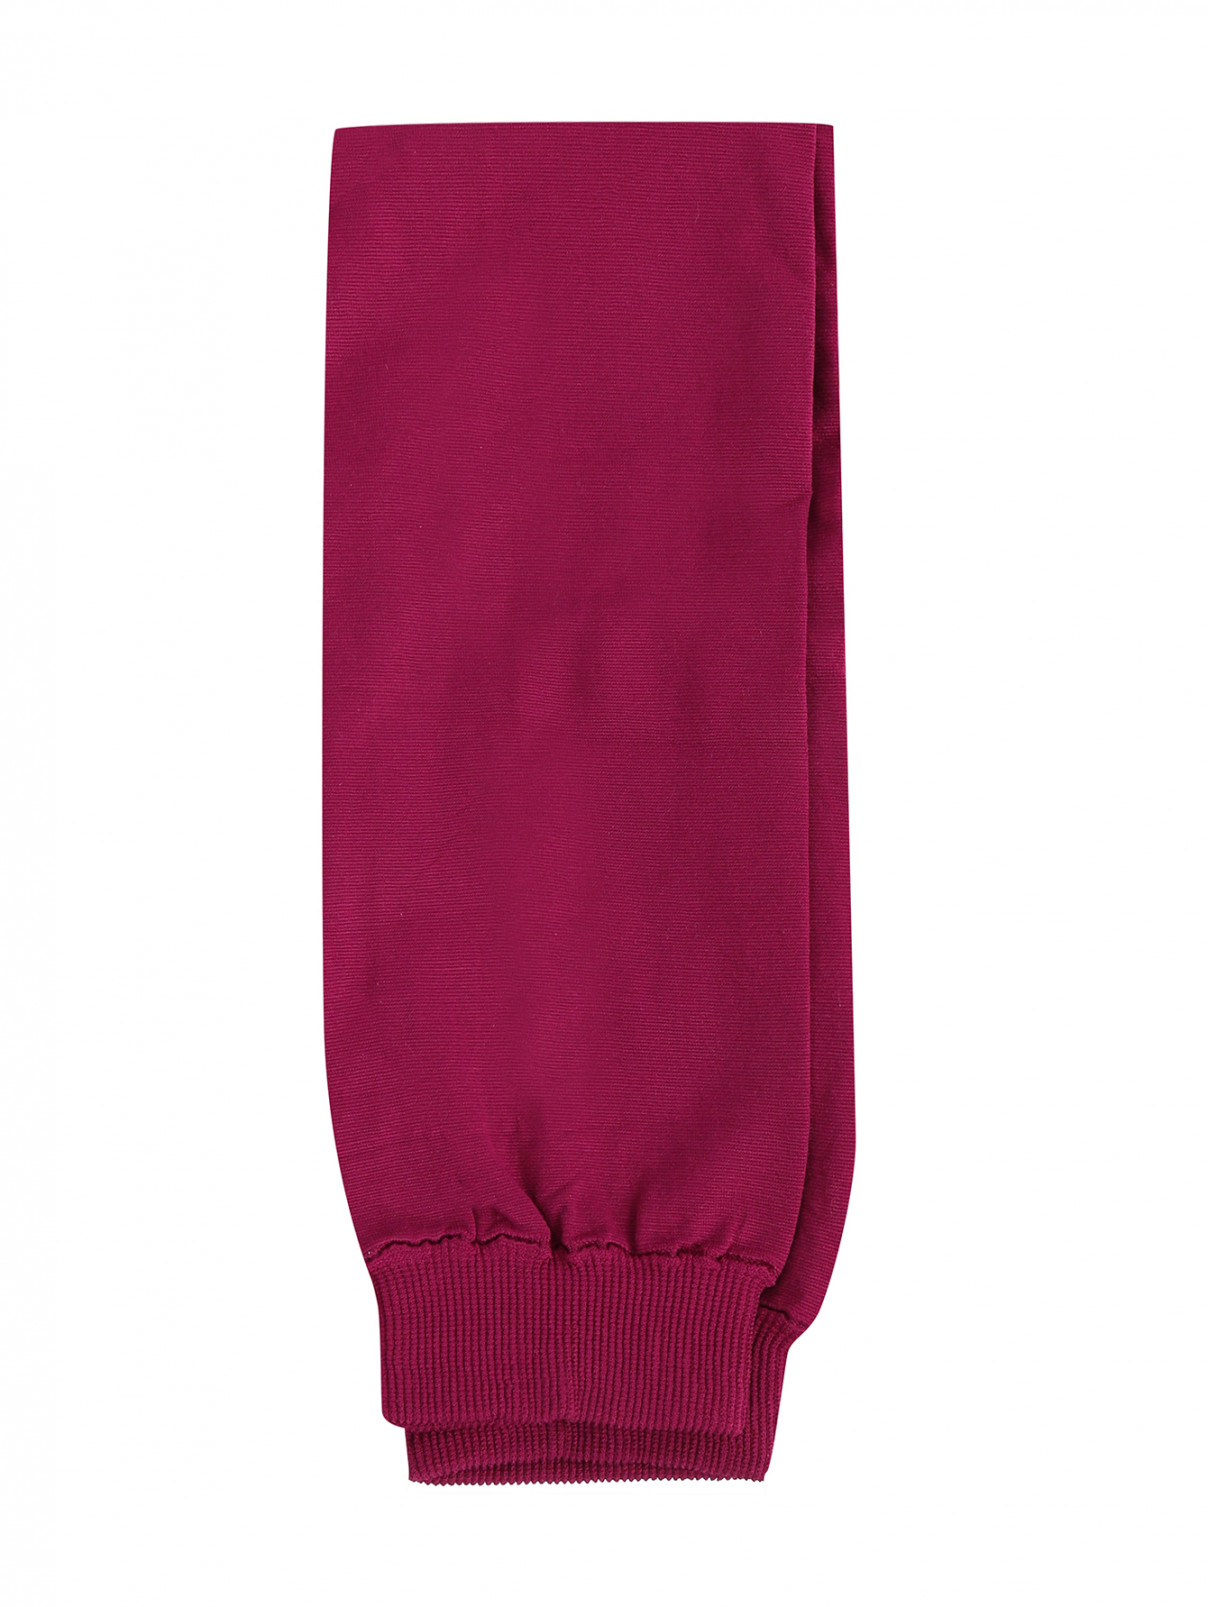 Легинсы из шелковистого материала Jean Paul Gaultier  –  Общий вид  – Цвет:  Розовый